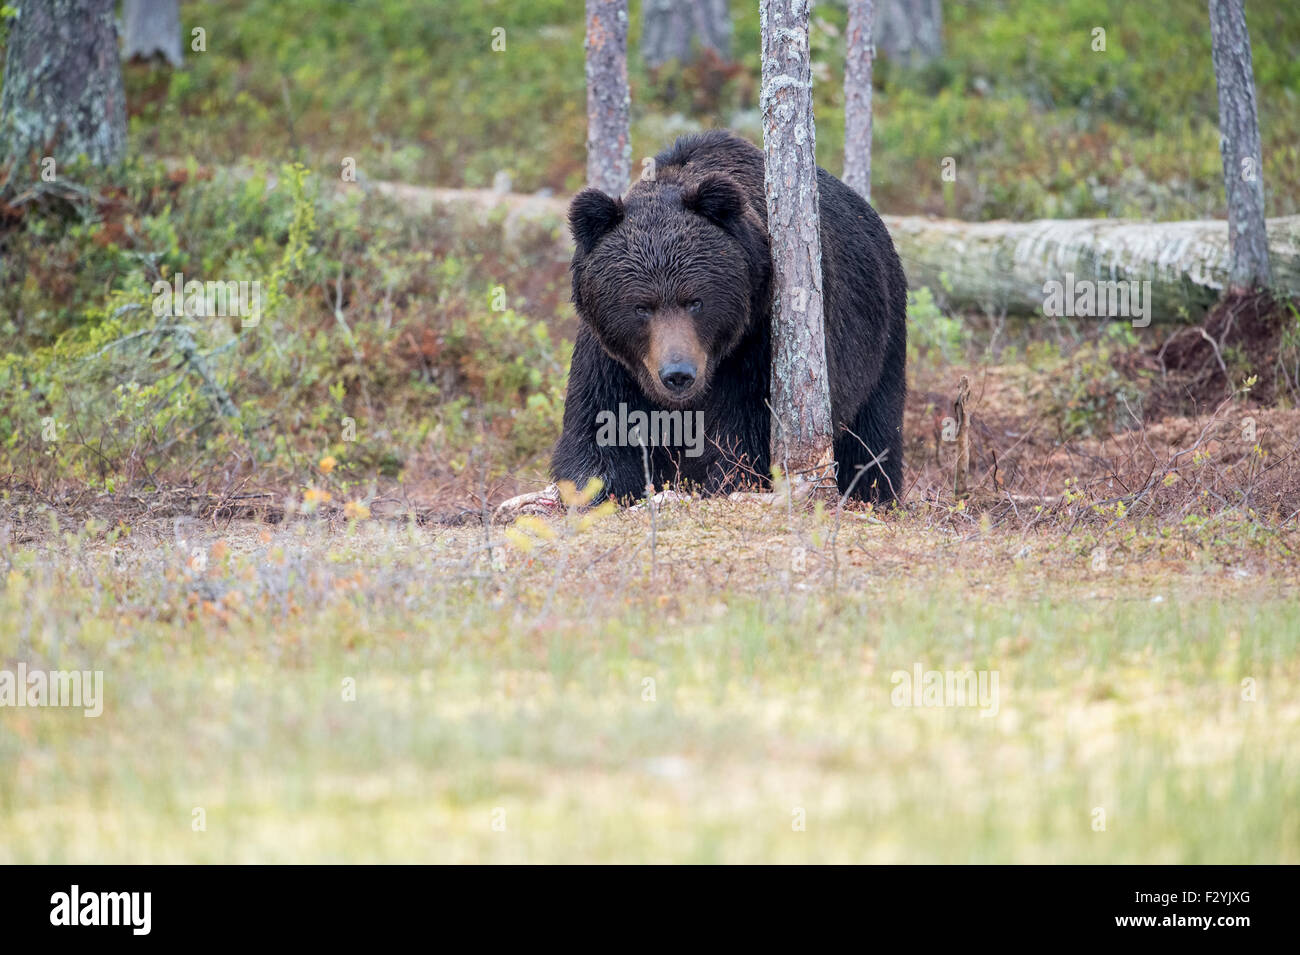 Eurasische Braunbär Ursus Arctos Arctos ergibt sich aus den wilden Wäldern Finnlands, nahe der russischen Grenze. Stockfoto